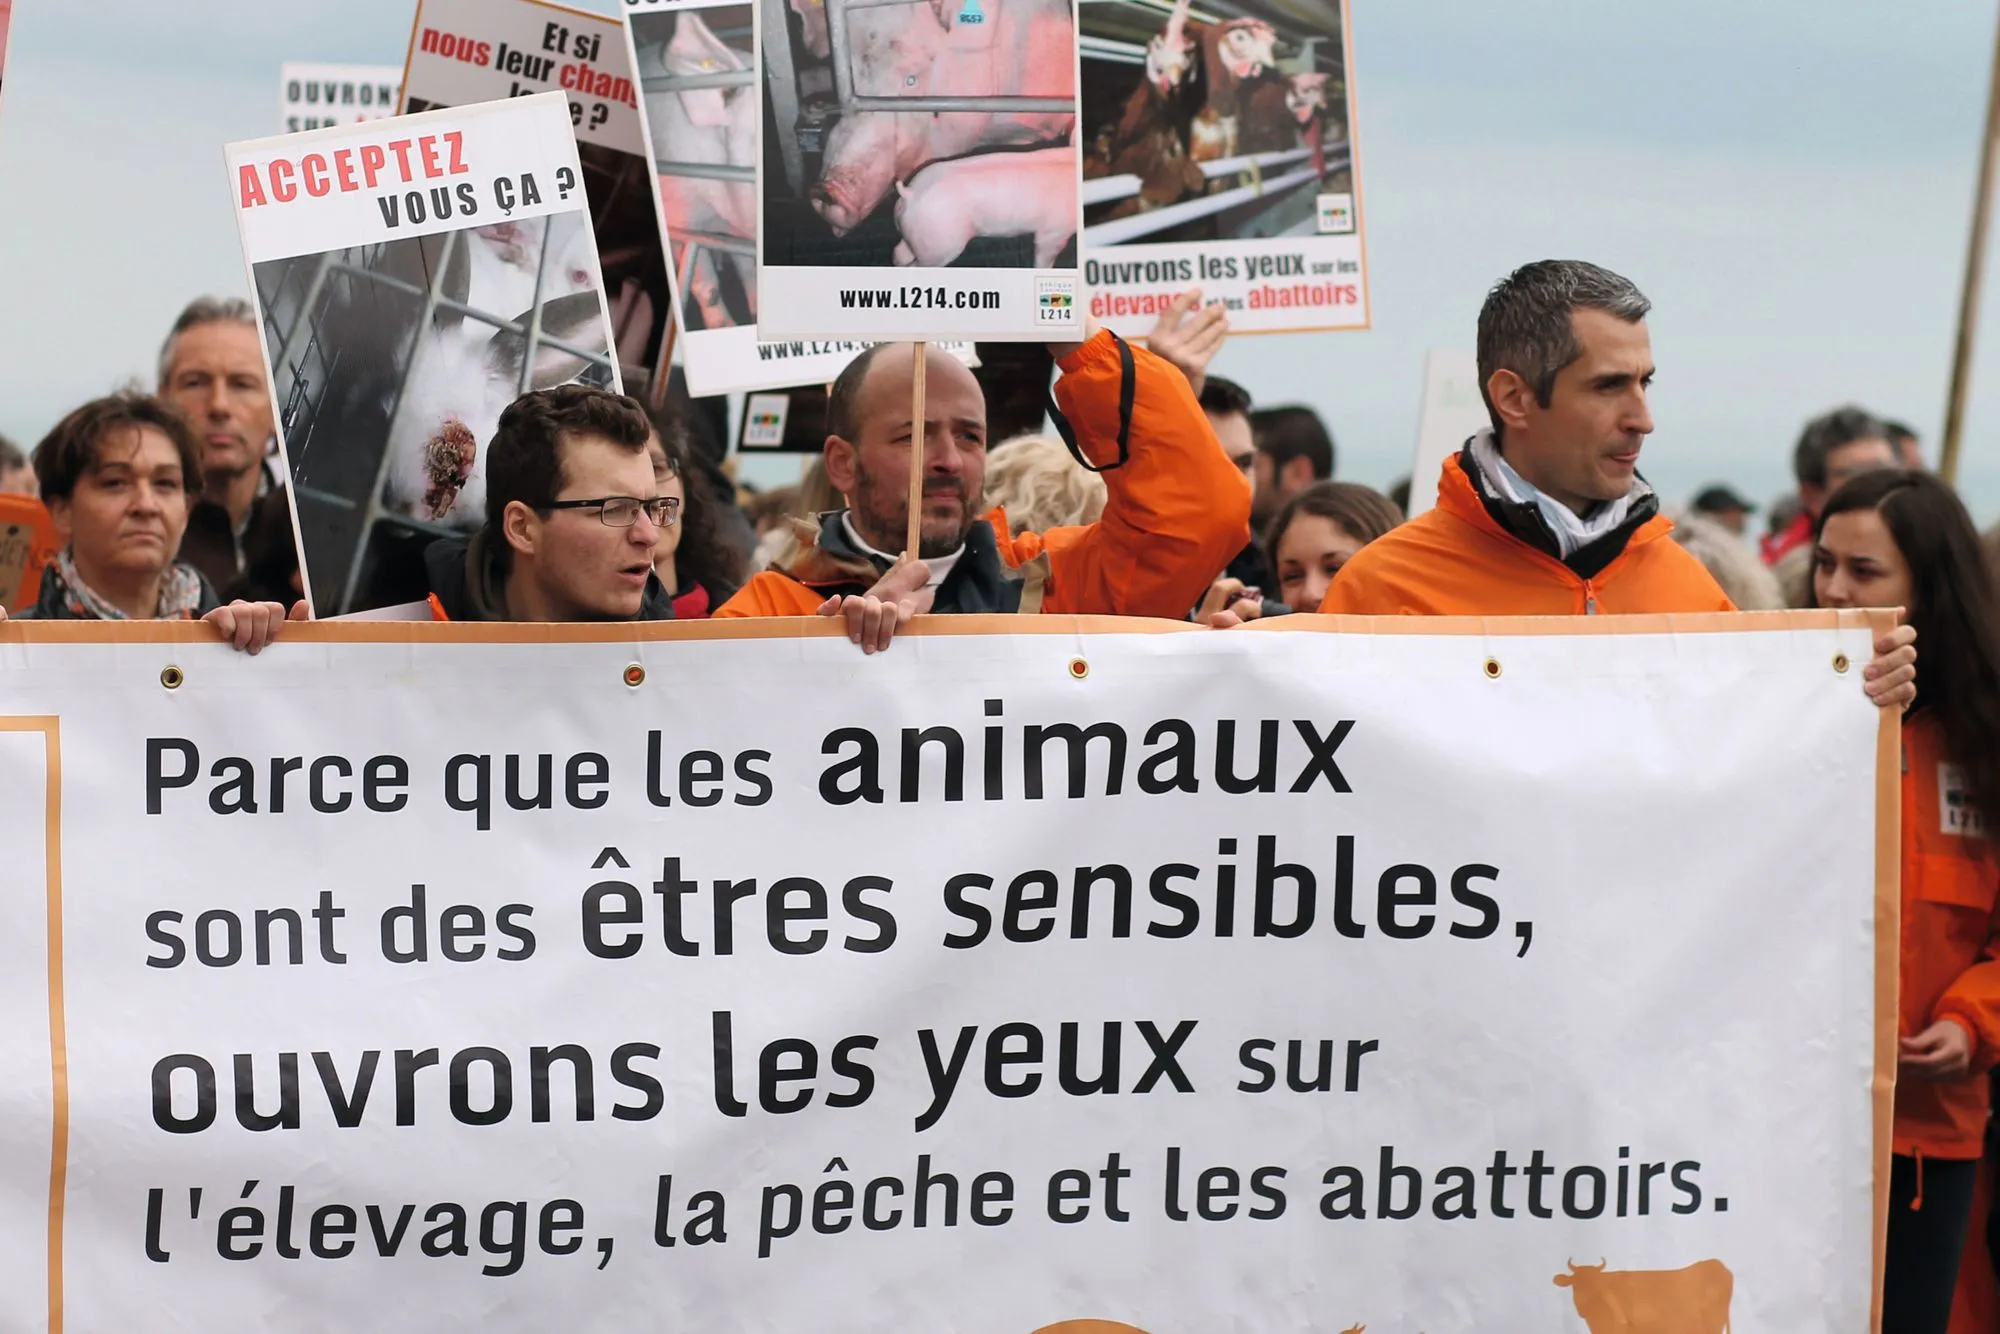 Le 4 avril 2015, des militants de l'association L214 protestent contre la construction d'une ferme‑usine à Poiroux